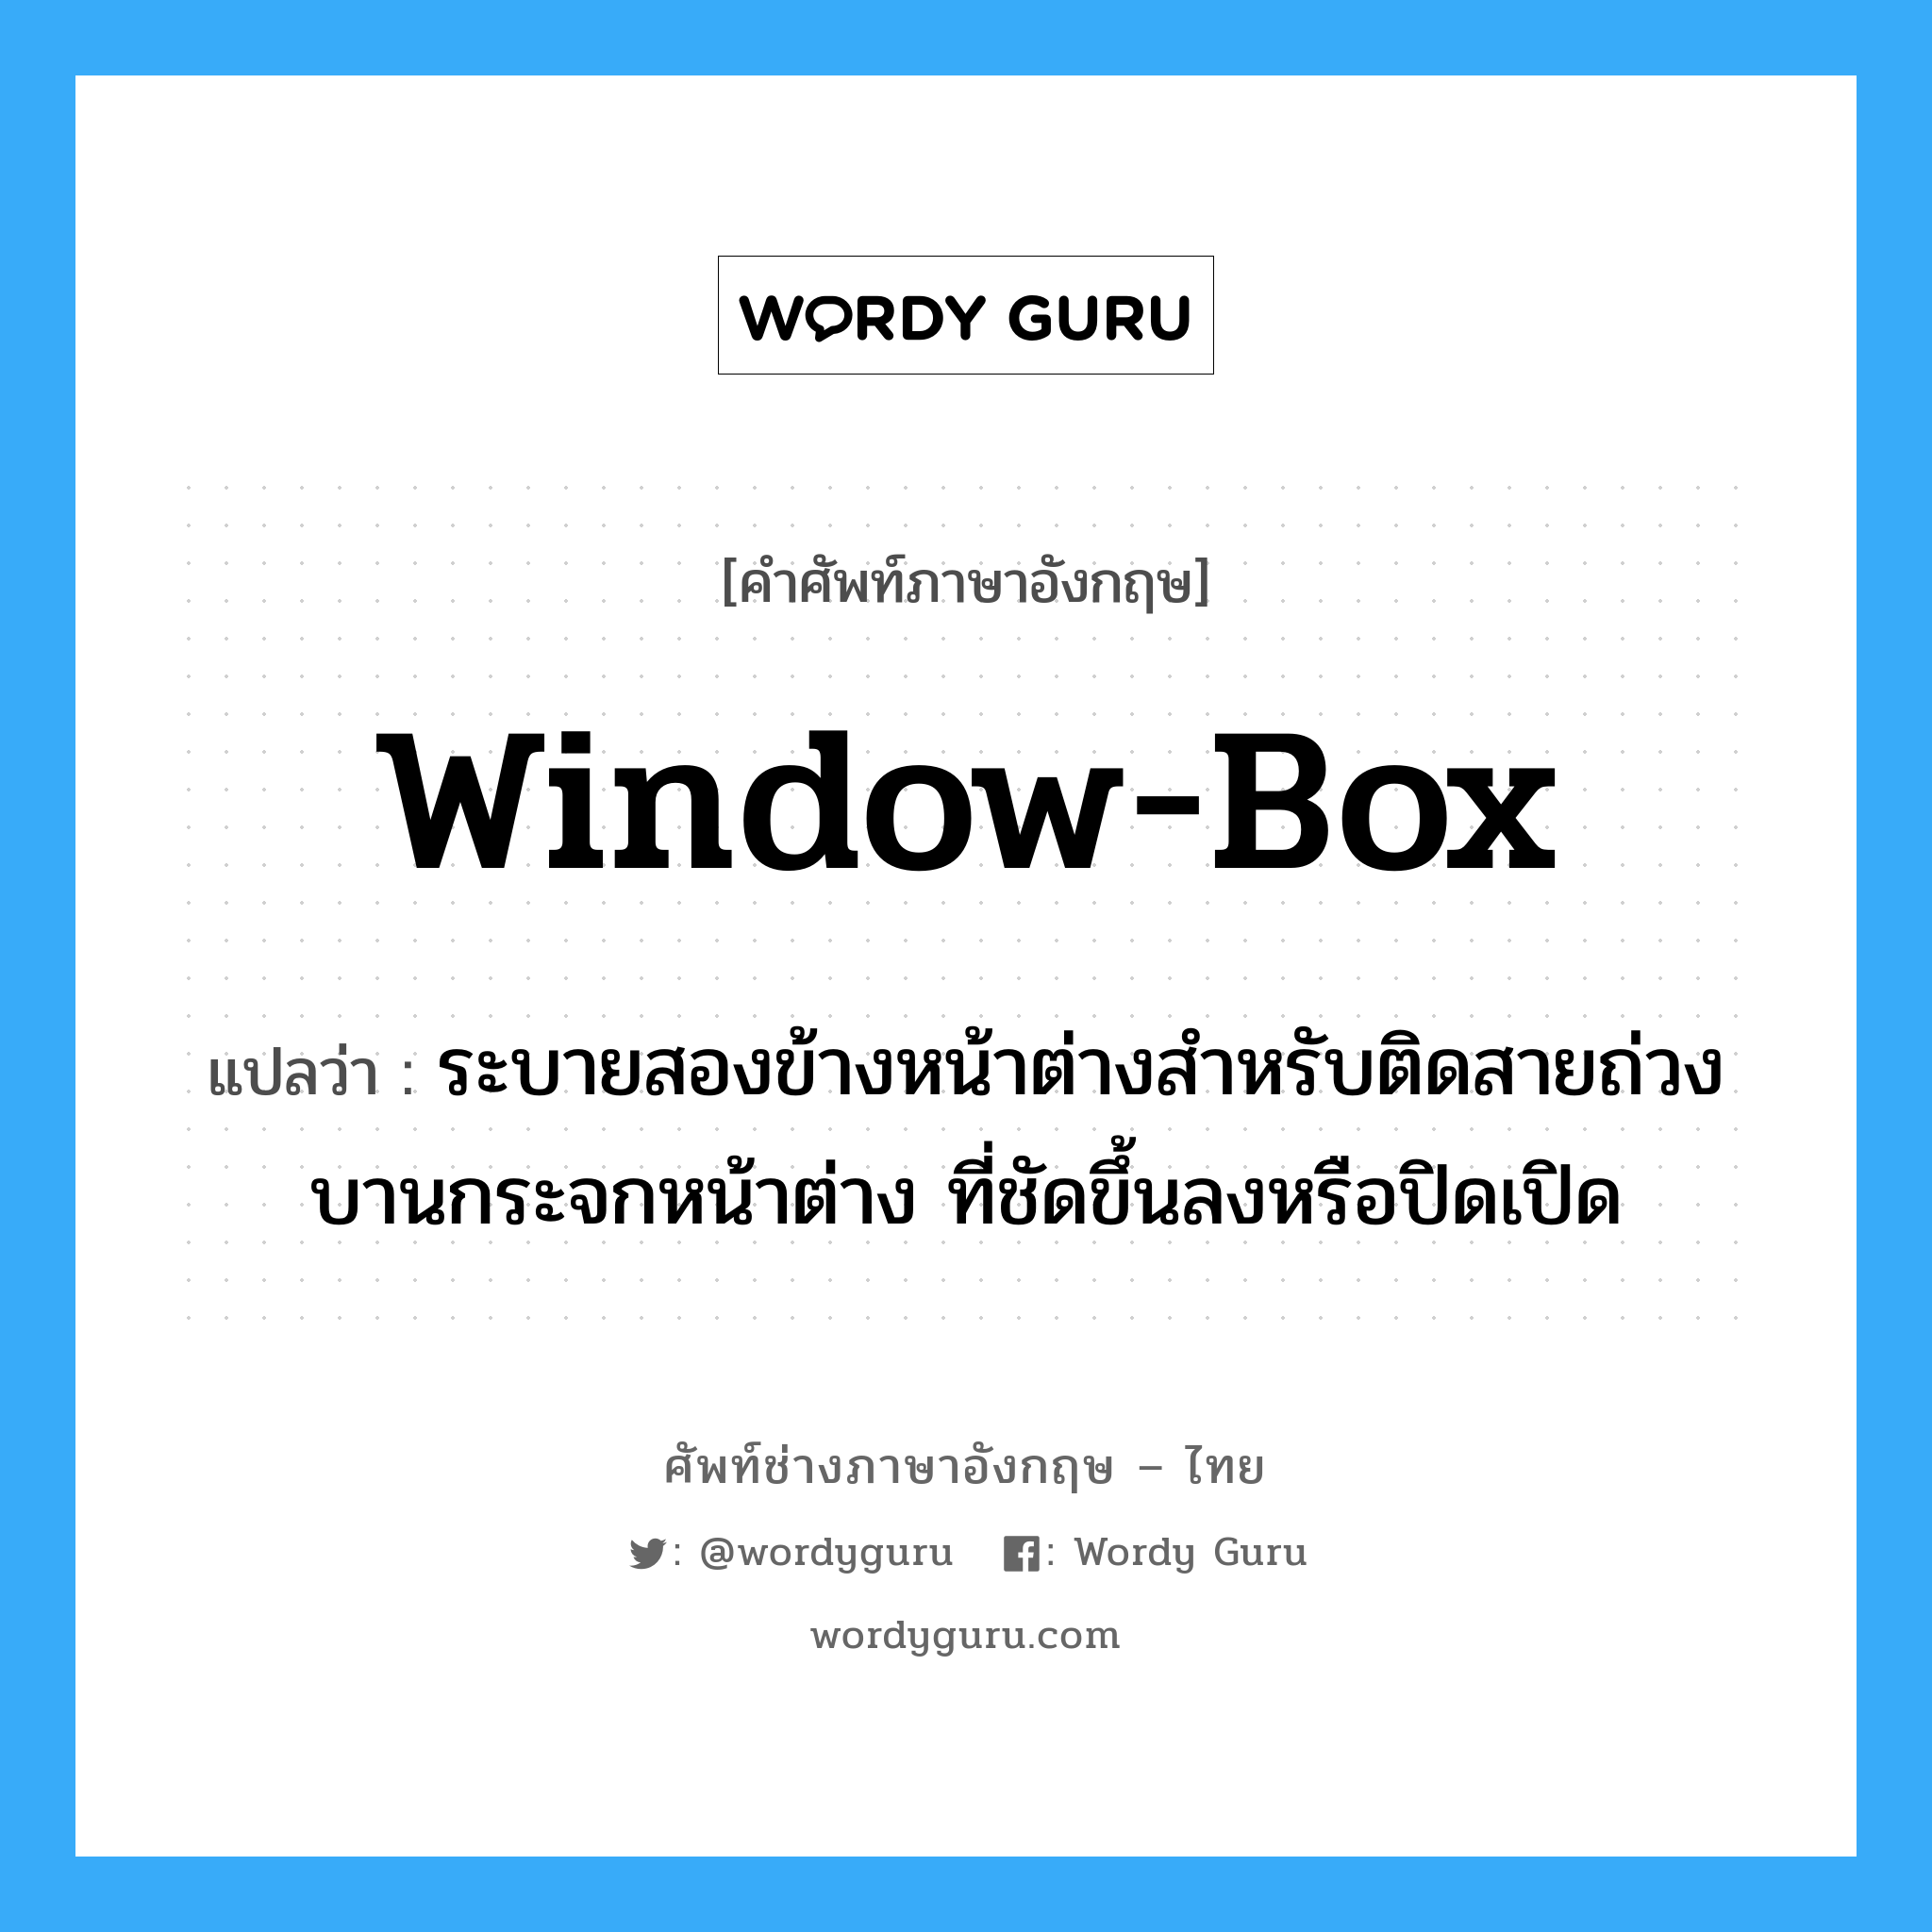 window box แปลว่า?, คำศัพท์ช่างภาษาอังกฤษ - ไทย window-box คำศัพท์ภาษาอังกฤษ window-box แปลว่า ระบายสองข้างหน้าต่างสำหรับติดสายถ่วงบานกระจกหน้าต่าง ที่ชัดขึ้นลงหรือปิดเปิด